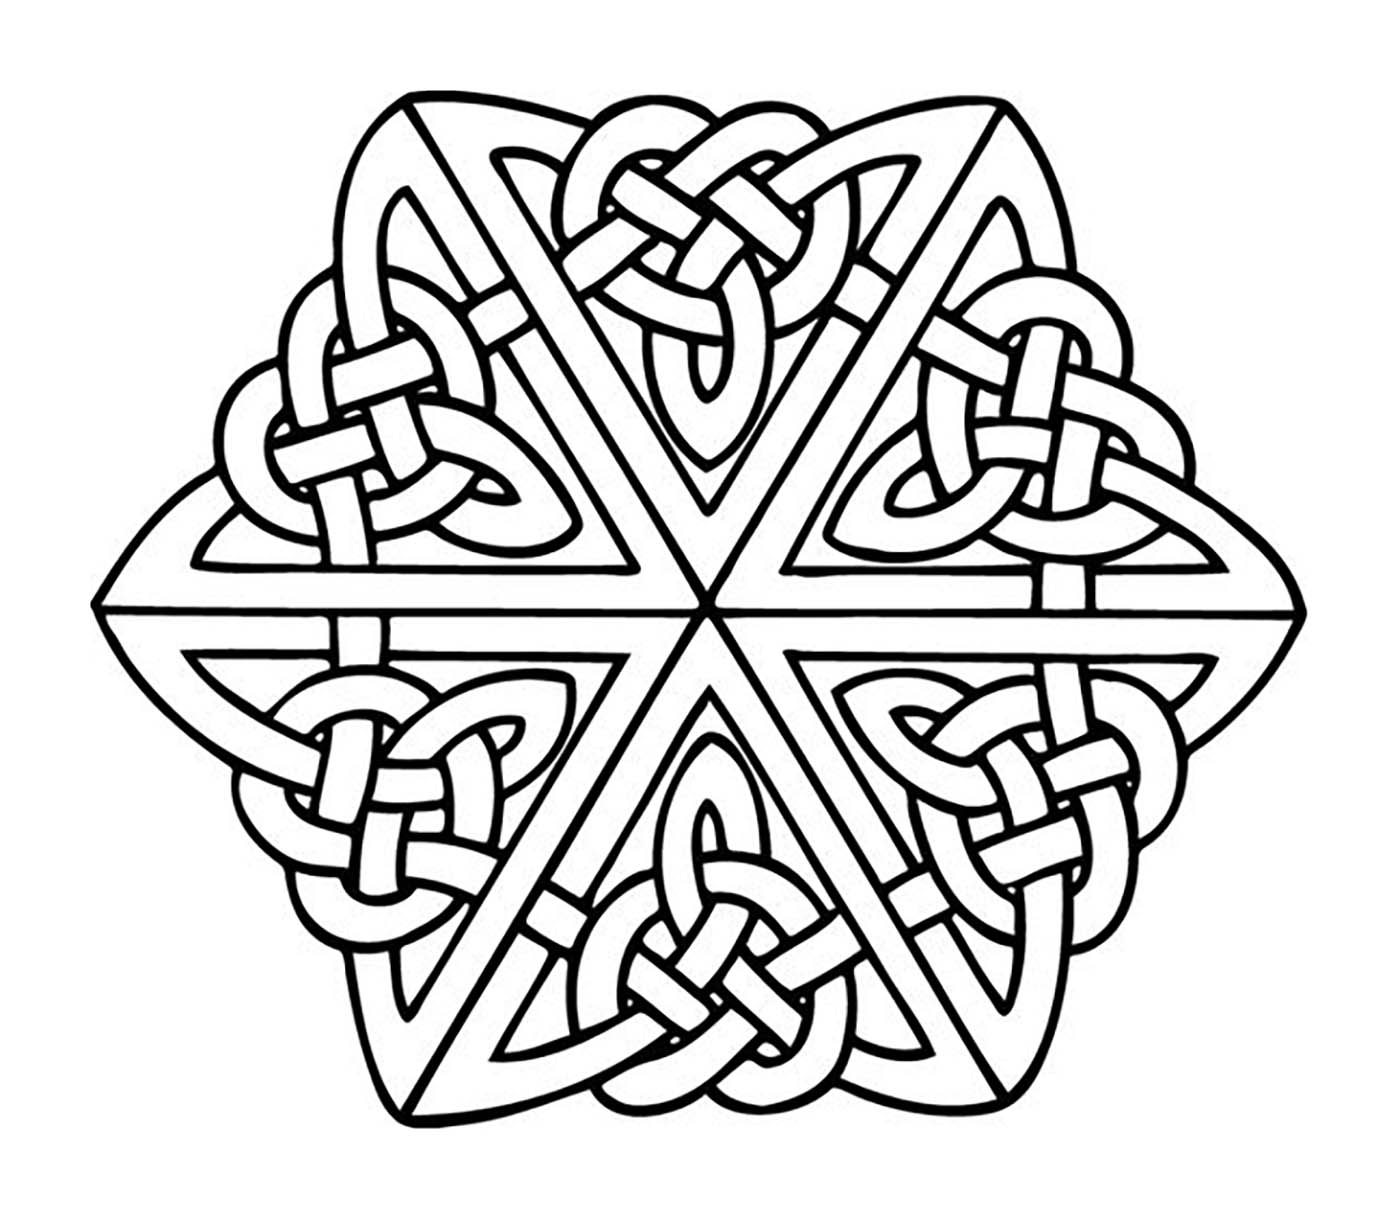 Si vous cherchez un Mandala 'celtique' pas trop compliqué à colorier, mais avec quand même un niveau de difficulté relatif, celui-ci est parfait pour vous.